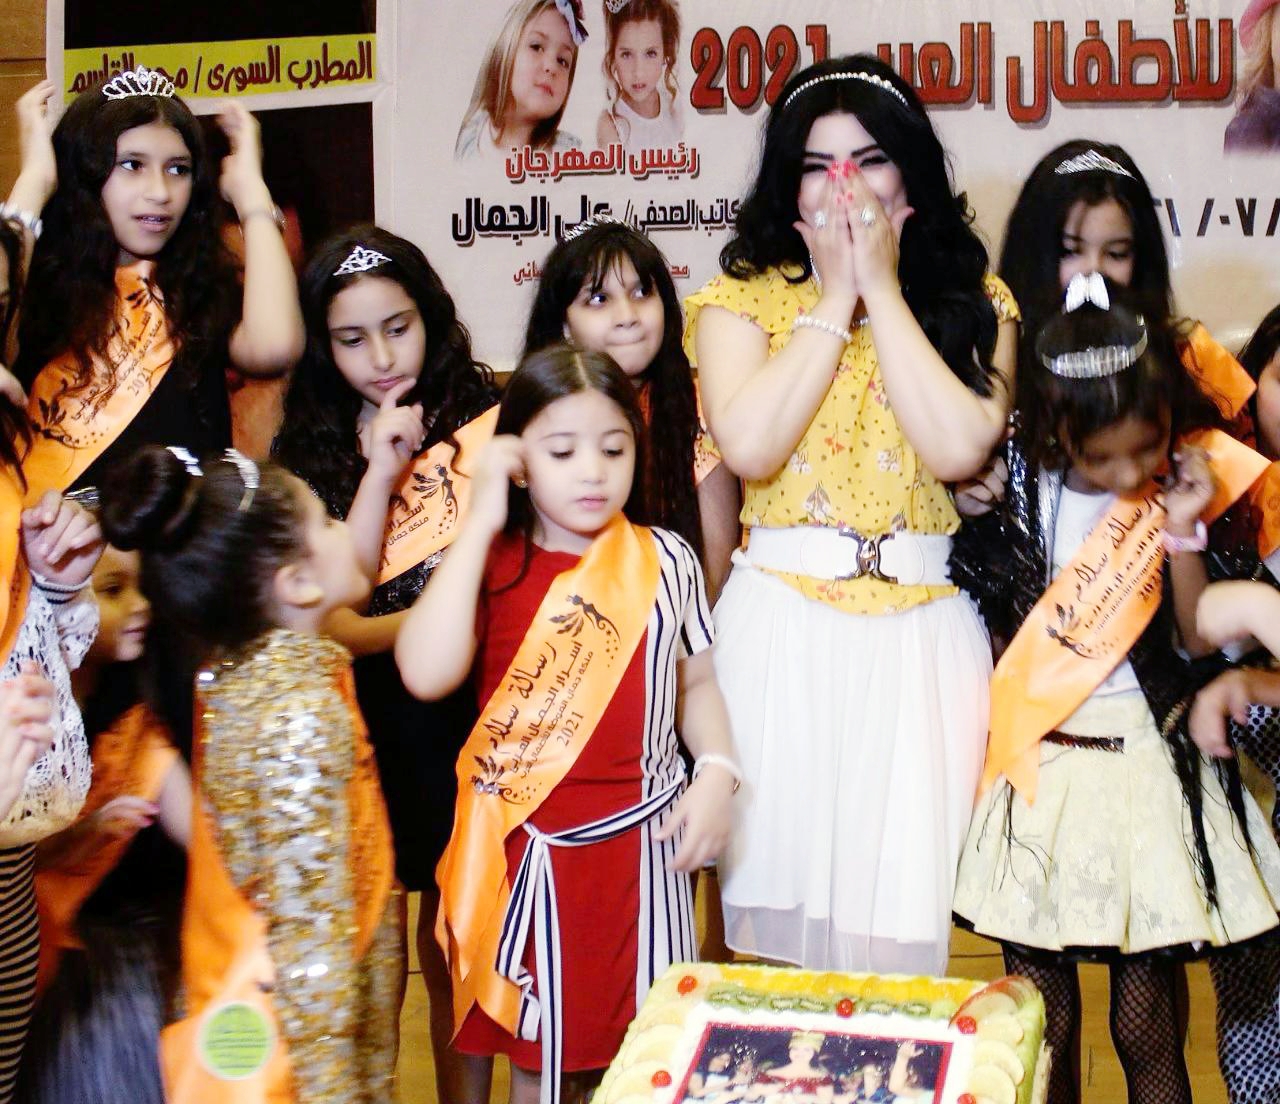 مروى المصرية في مهرجان الأطفال العرب للموضة وحولها مجموعة من الأطفال